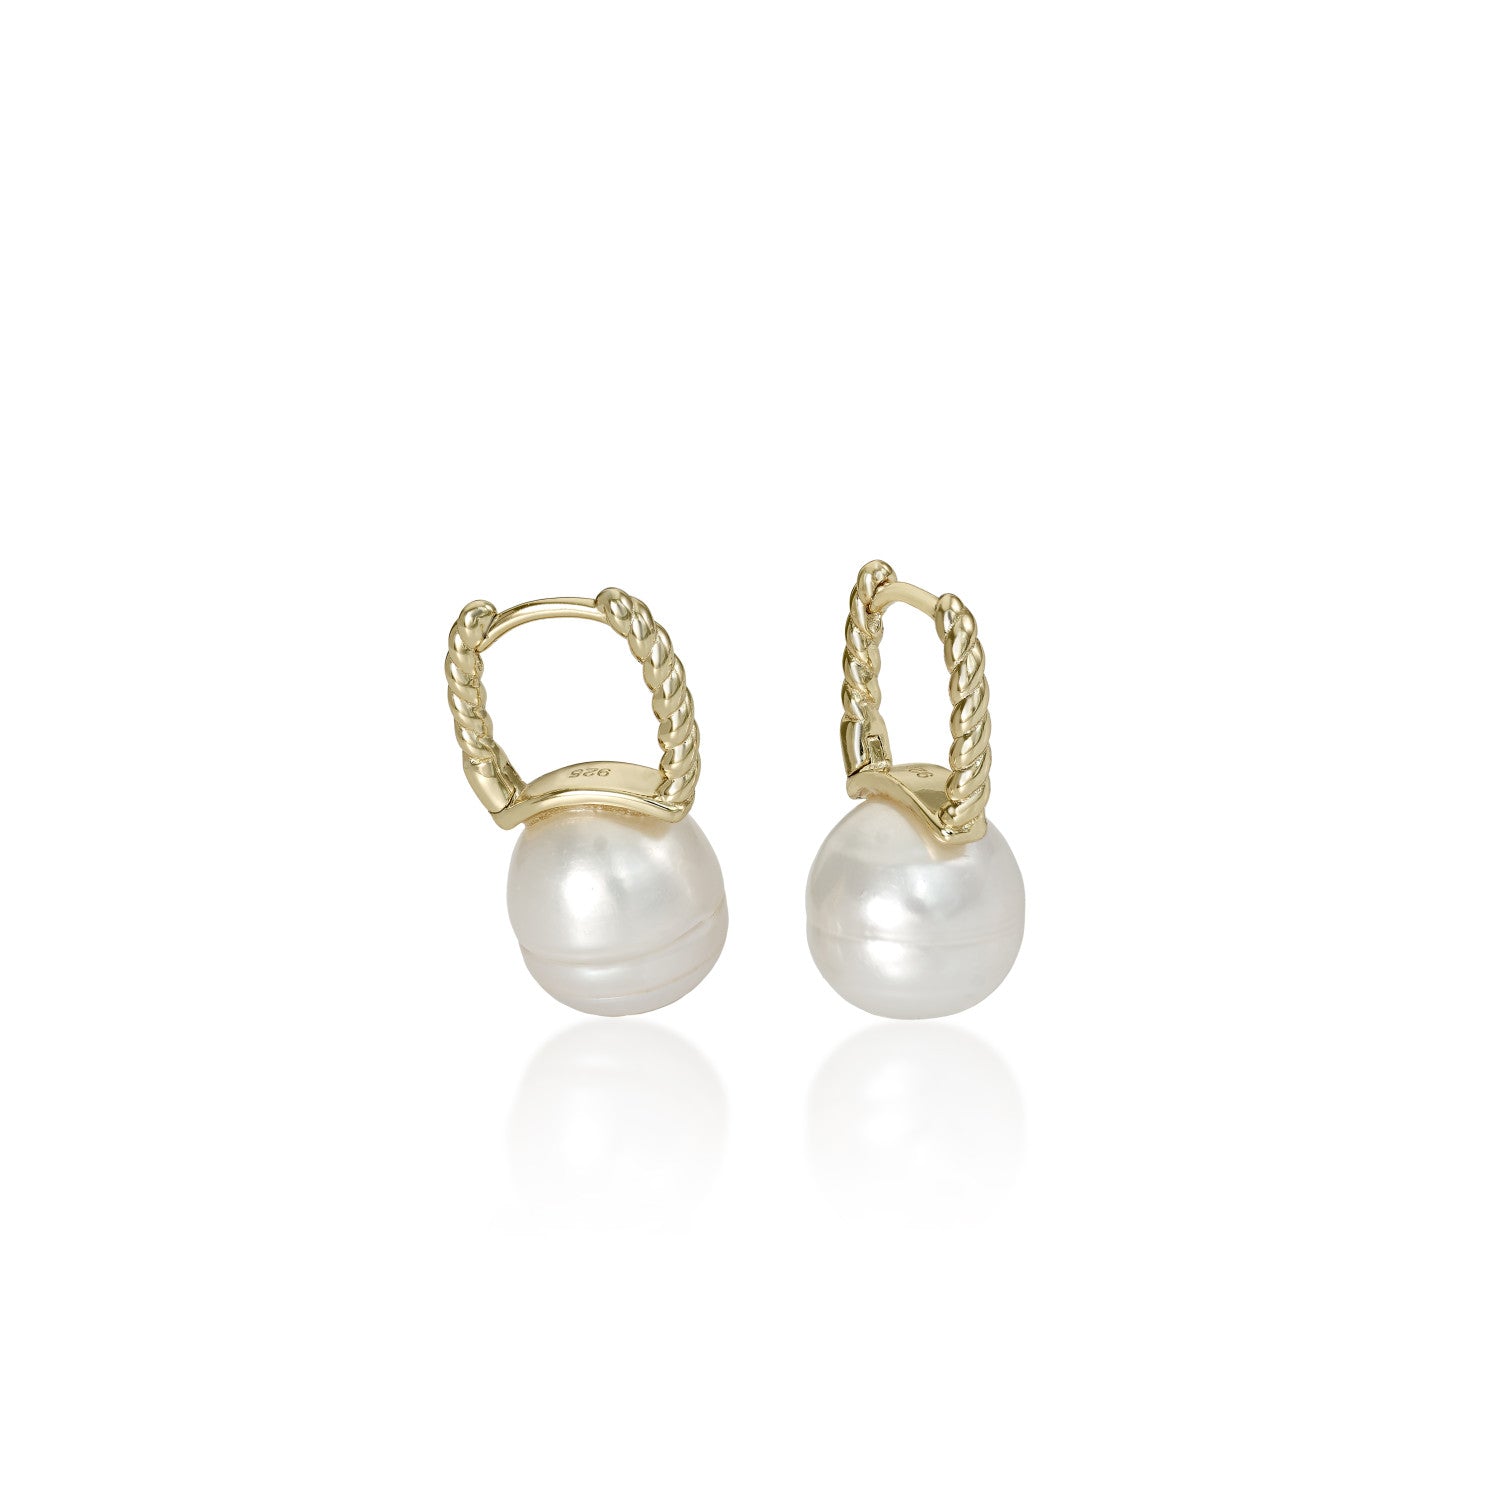 Pendientes perlas de plata bañada en oro diseño espiga con perla barroca